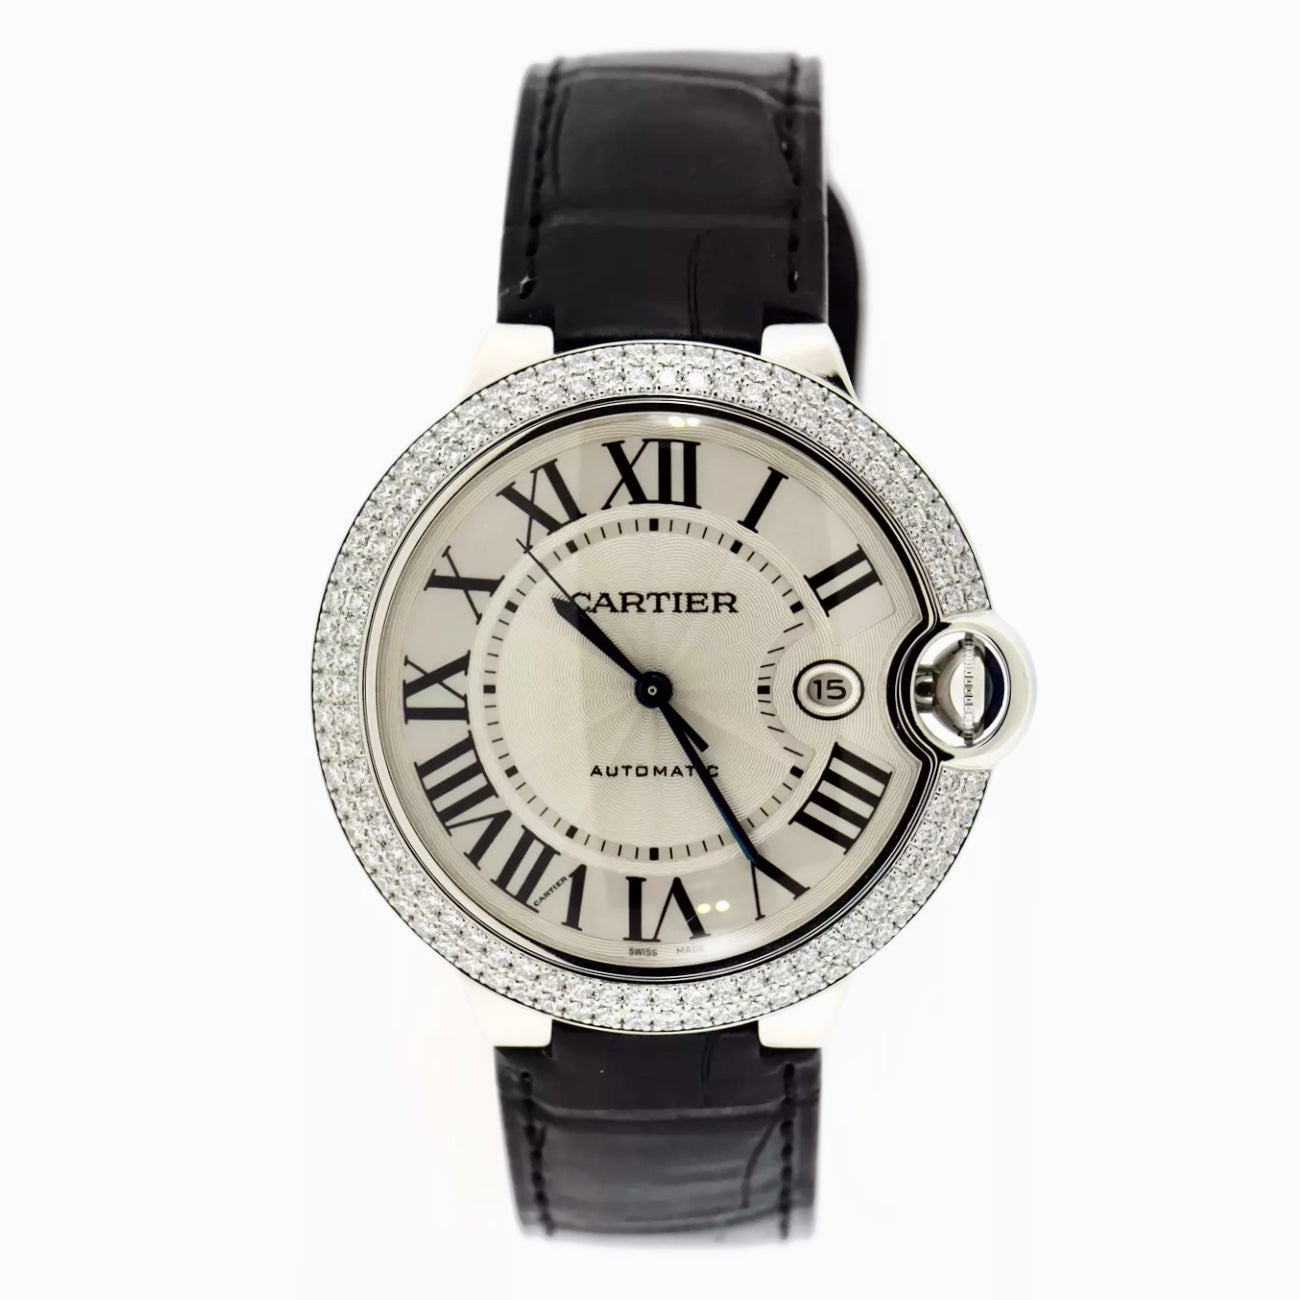 CARTIER BALLON BLEU Automatic 42mm Steel Watch 2TCW+ DIAMONDS Cartier Band